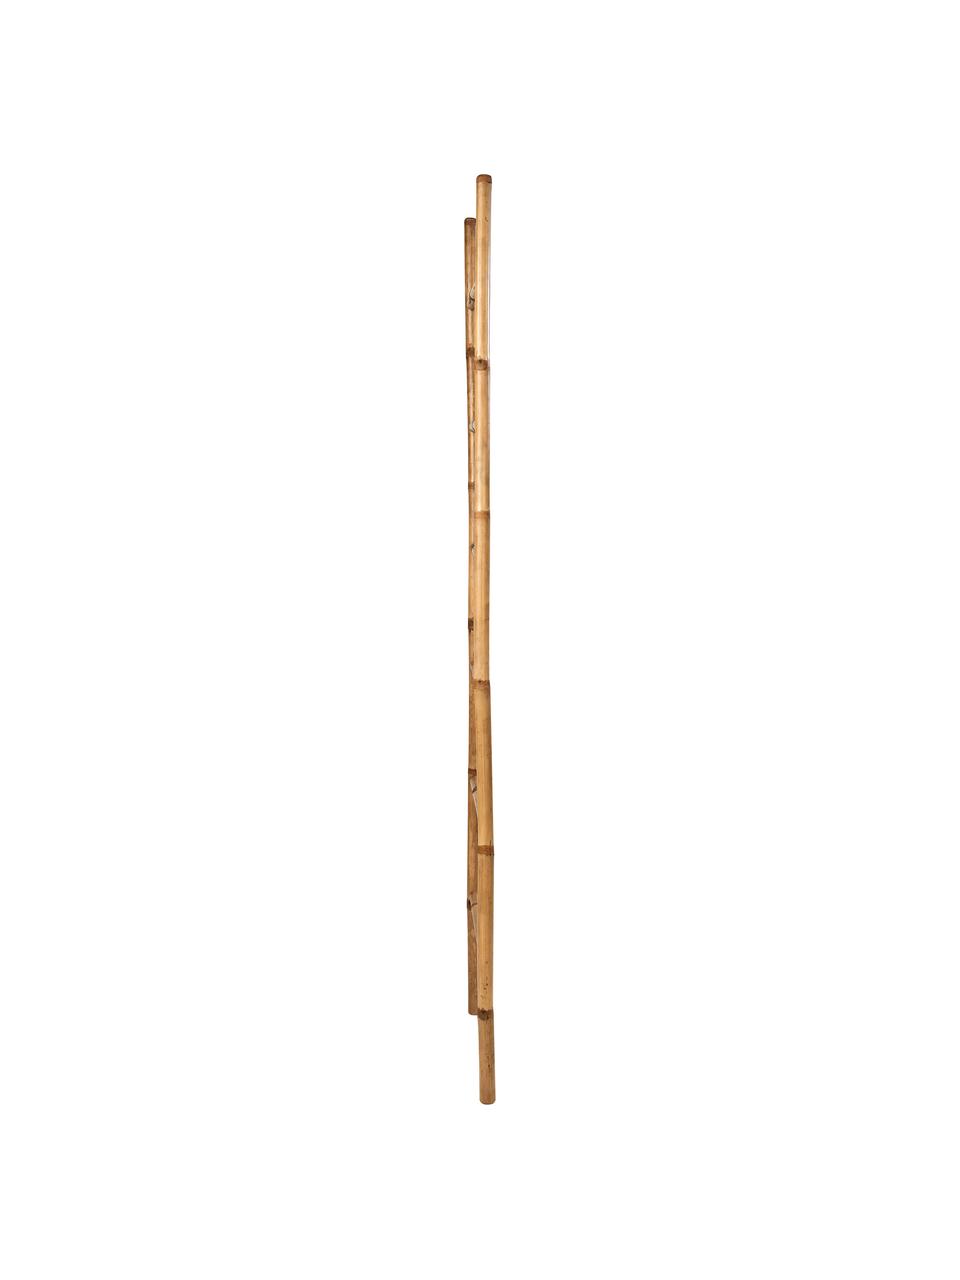 Ladderrek Safari van bamboehout, Bamboehout, Bamboekleurig, B 50 x H 190 cm